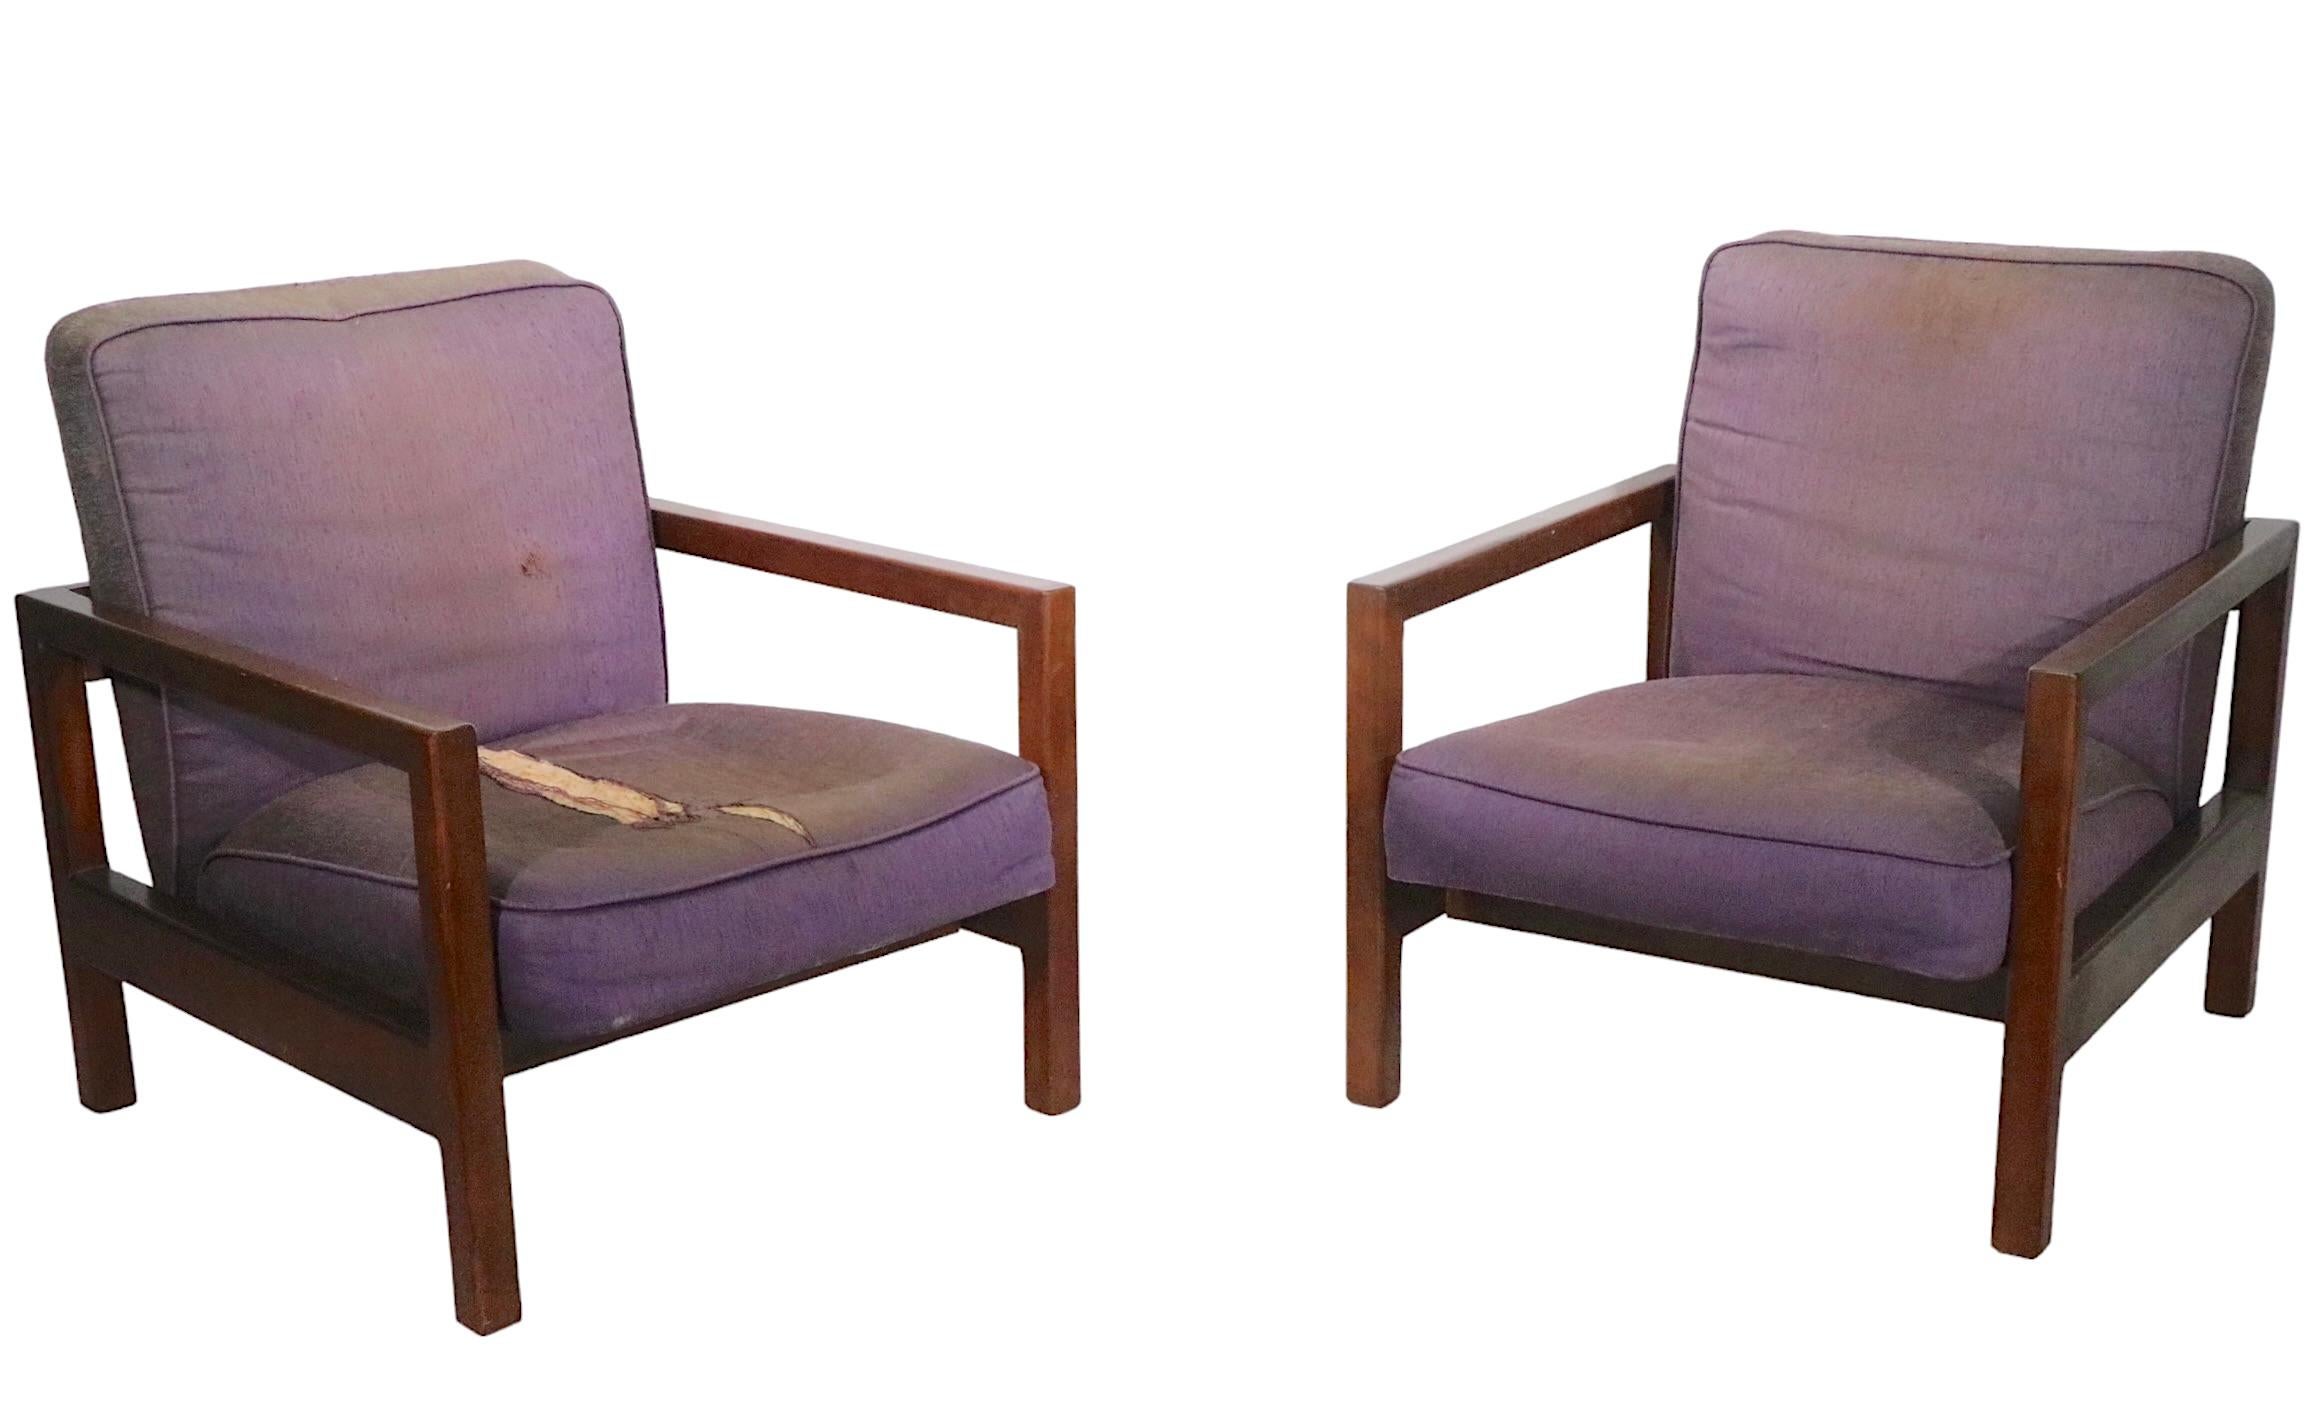 Raffiniertes, schickes und schickes Paar Loungesessel, entworfen von George Nelson für Herman Miller um 1950. Die Stühle haben einen massiven Ahornrahmen mit dick gepolsterten Sitzen und Rückenlehnen, die Polsterung ist wie sie ist und muss ersetzt